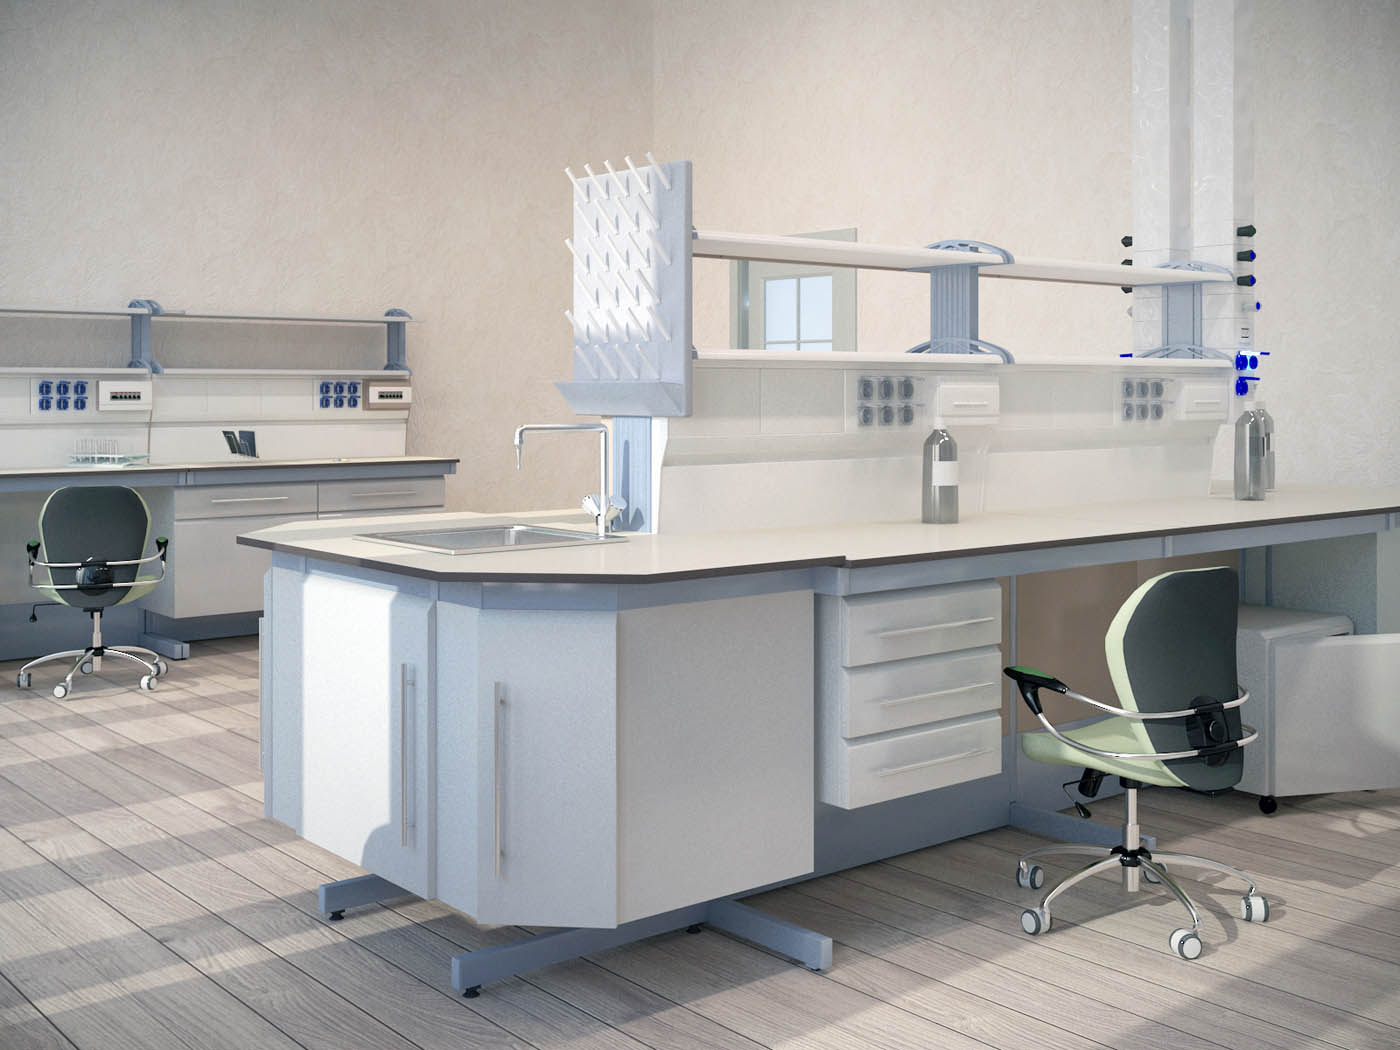 Лабораторная мебель: важный элемент оборудования для научных и образовательных центров